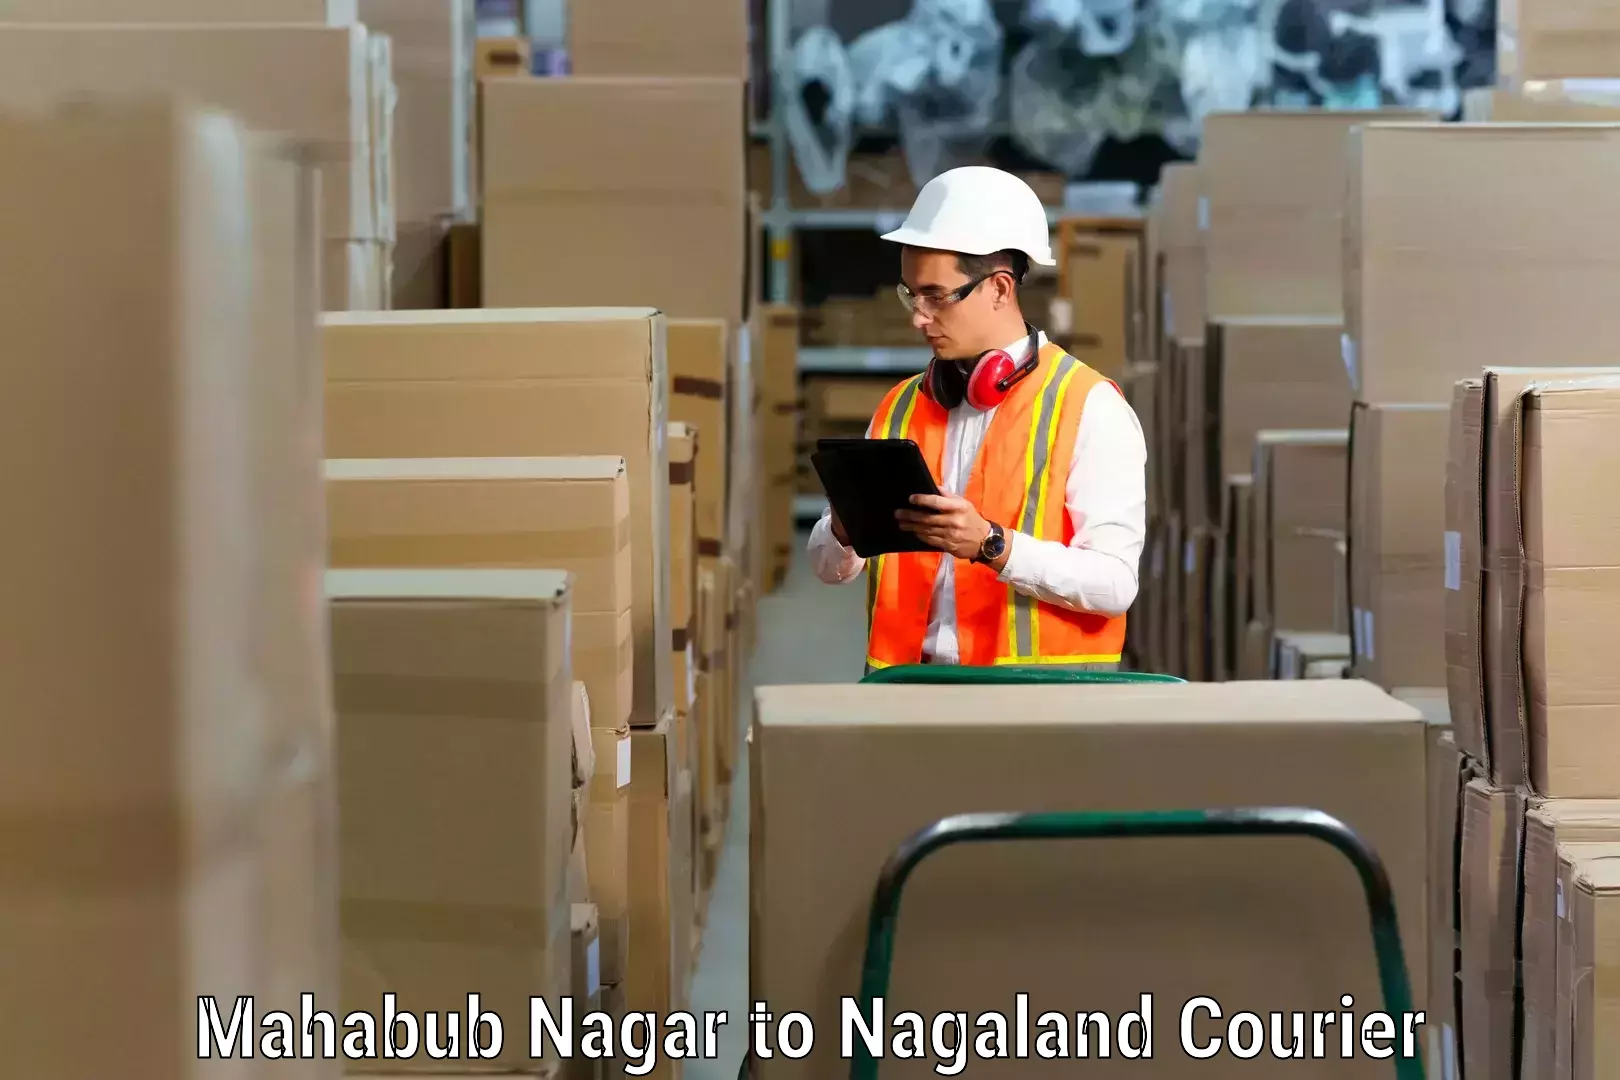 Furniture moving experts Mahabub Nagar to NIT Nagaland